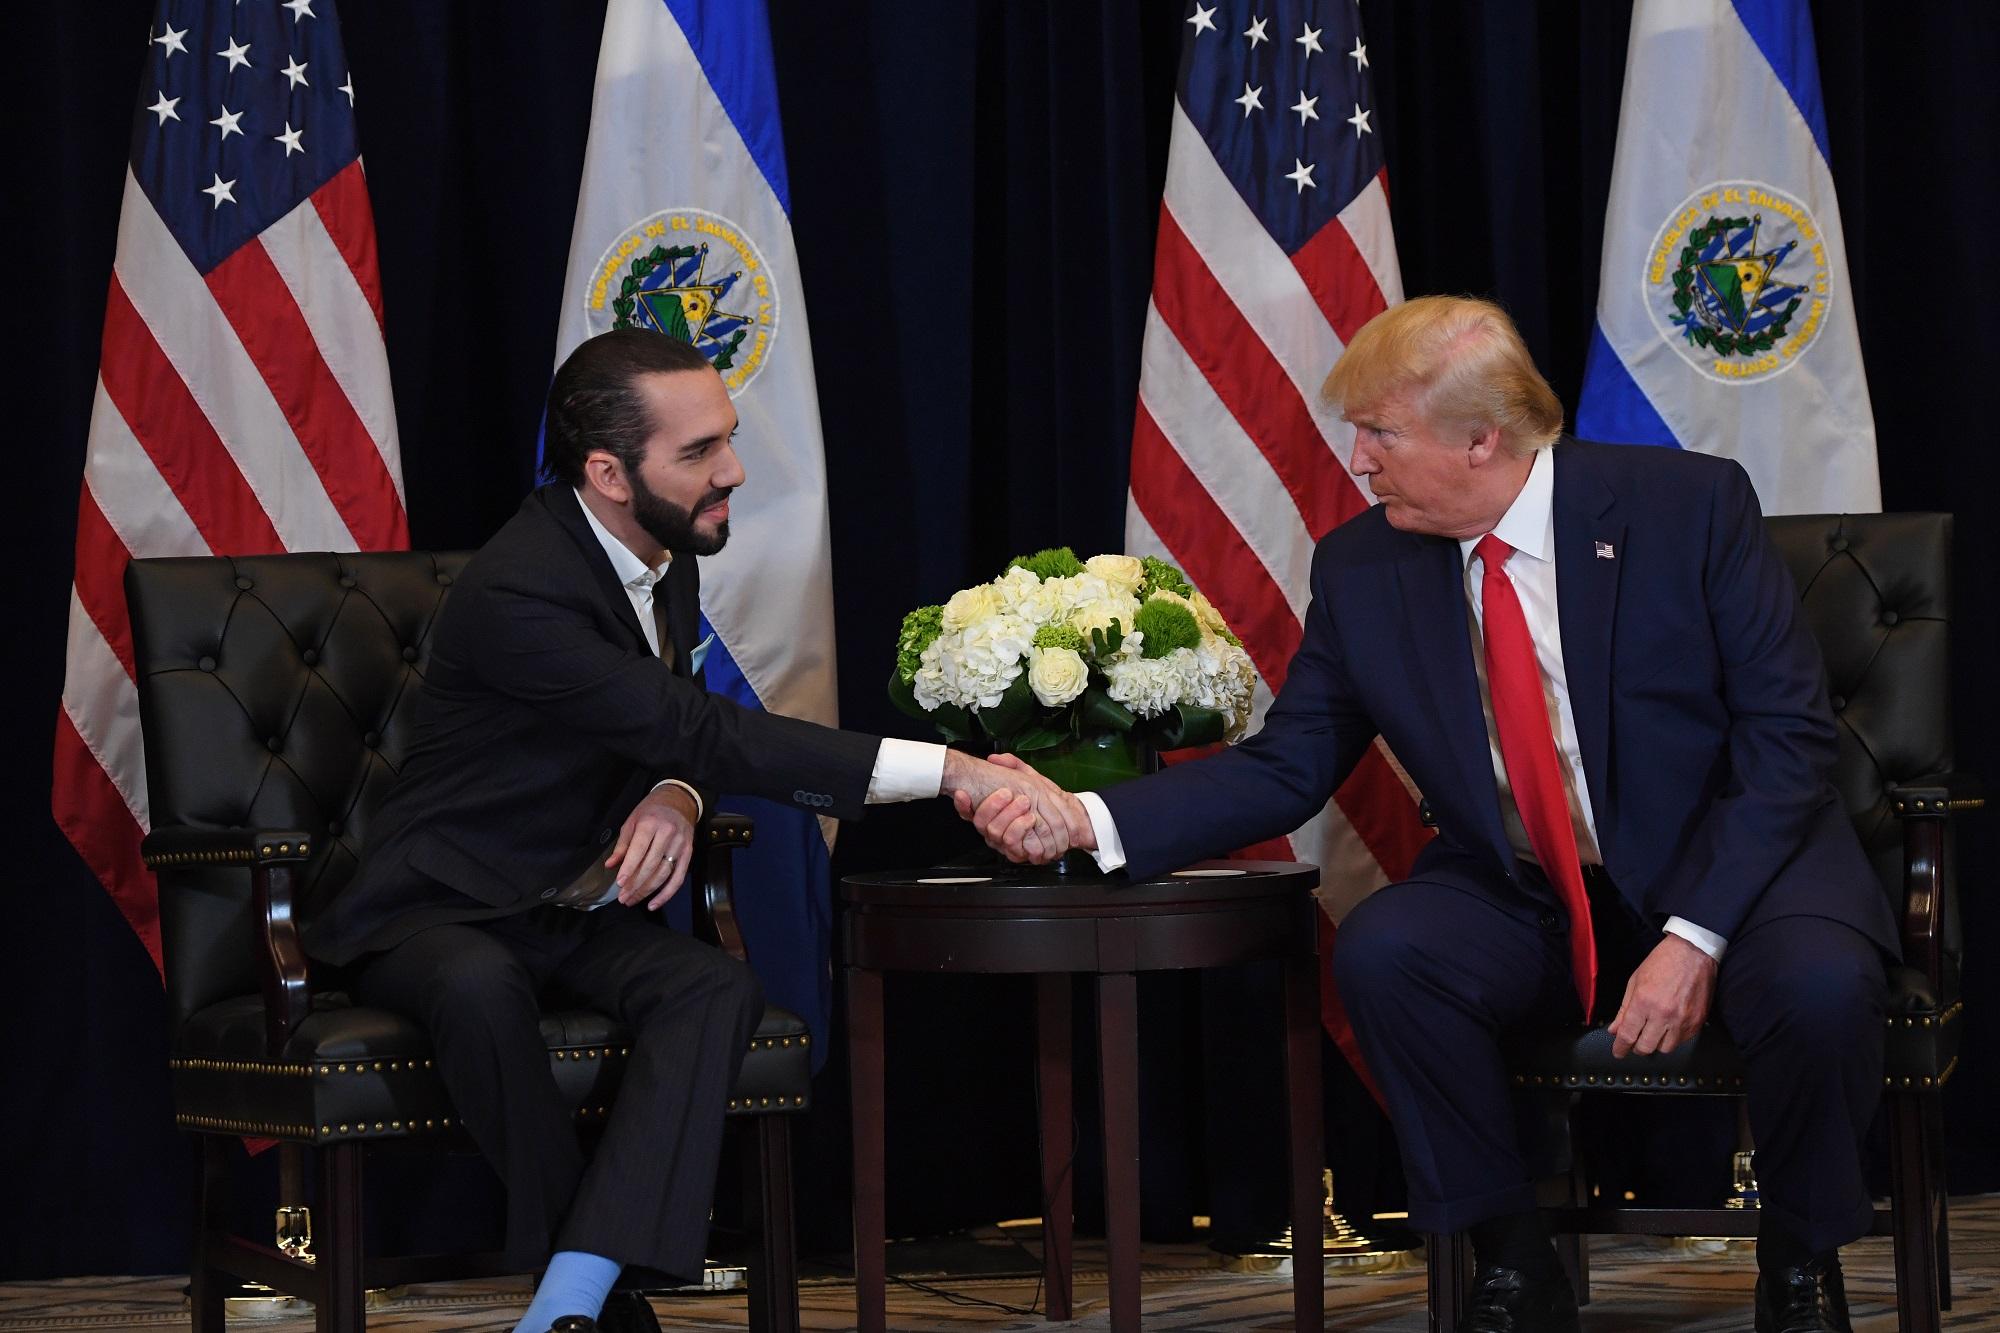 El Presidente Bukele estrecha la mano del presidente Trump, durante la reunion que tuvieron ambos mandatarios, el 25 de septiembre de 2019 en New York. Foto: SAUL LOEB / AFP